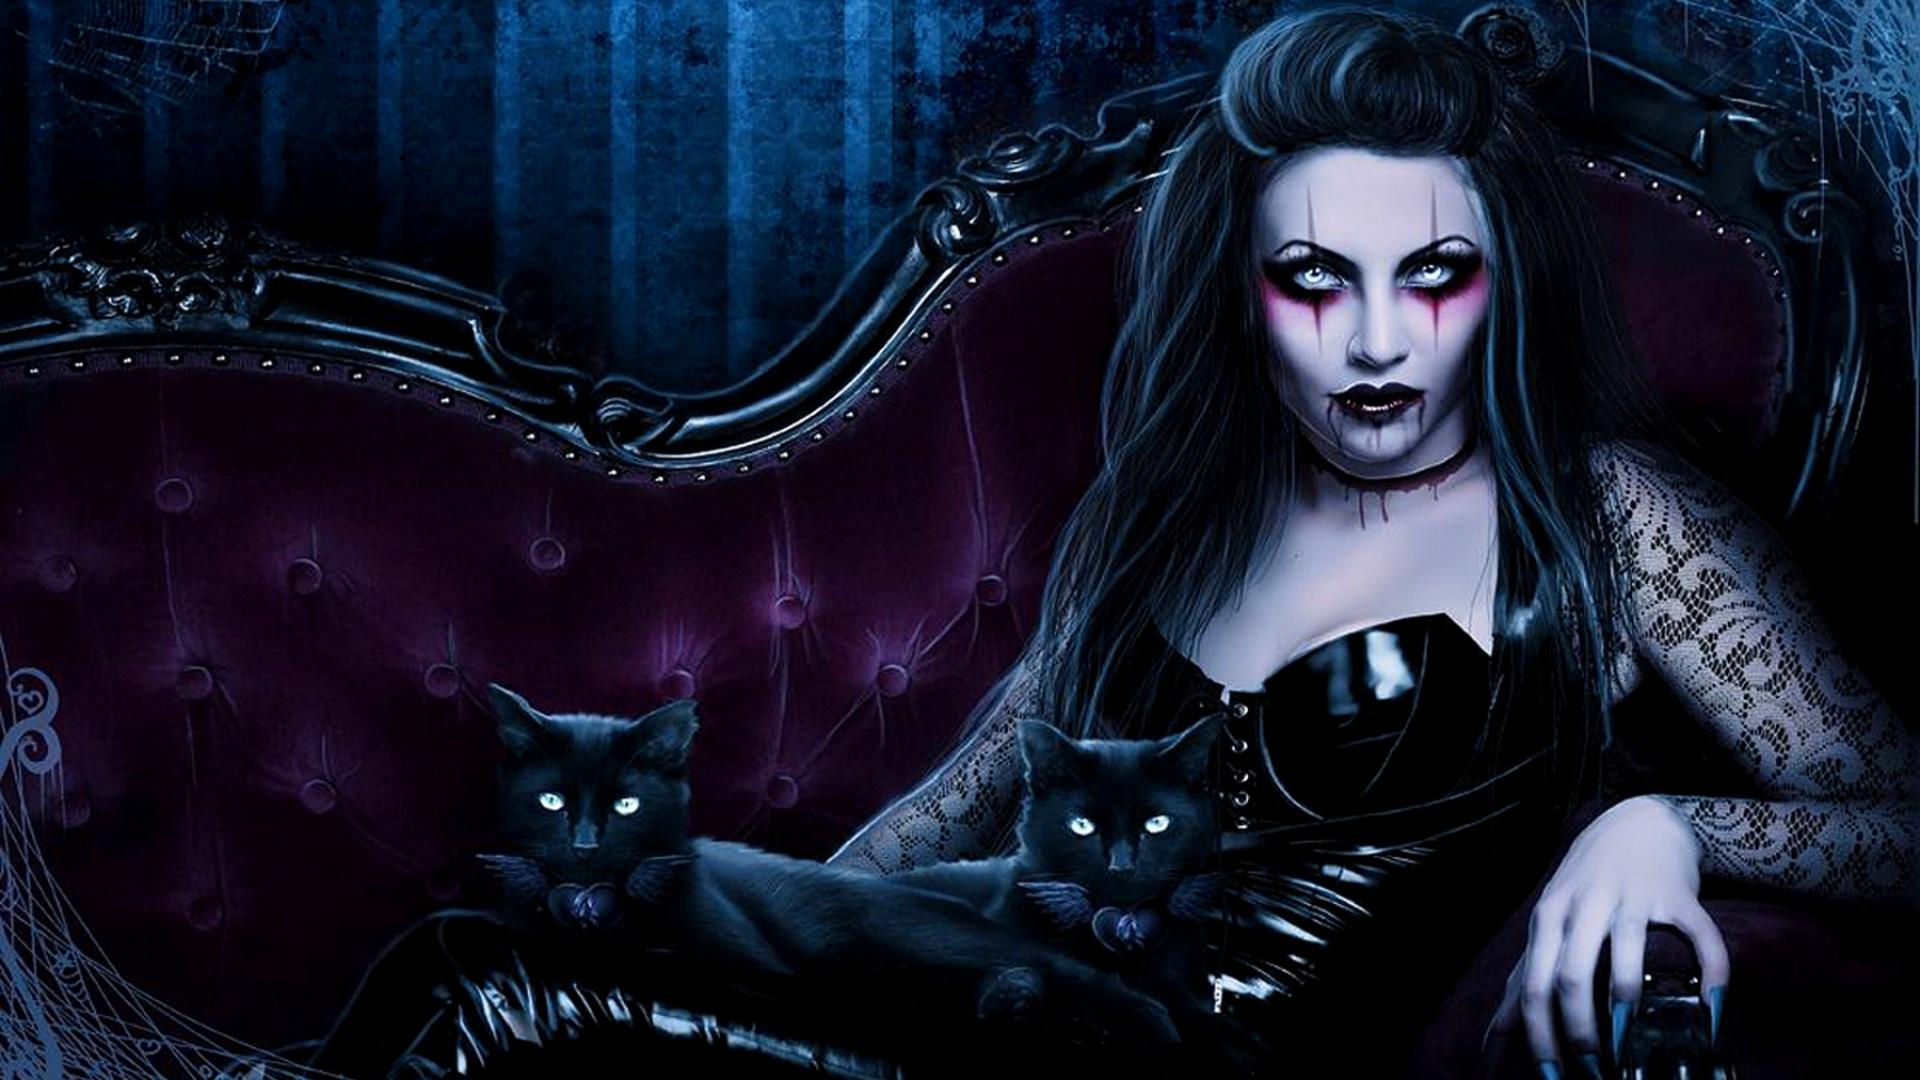 Dark fantasy gothic vampire evil horror cats art wallpaper 1920x1080 1920x1080